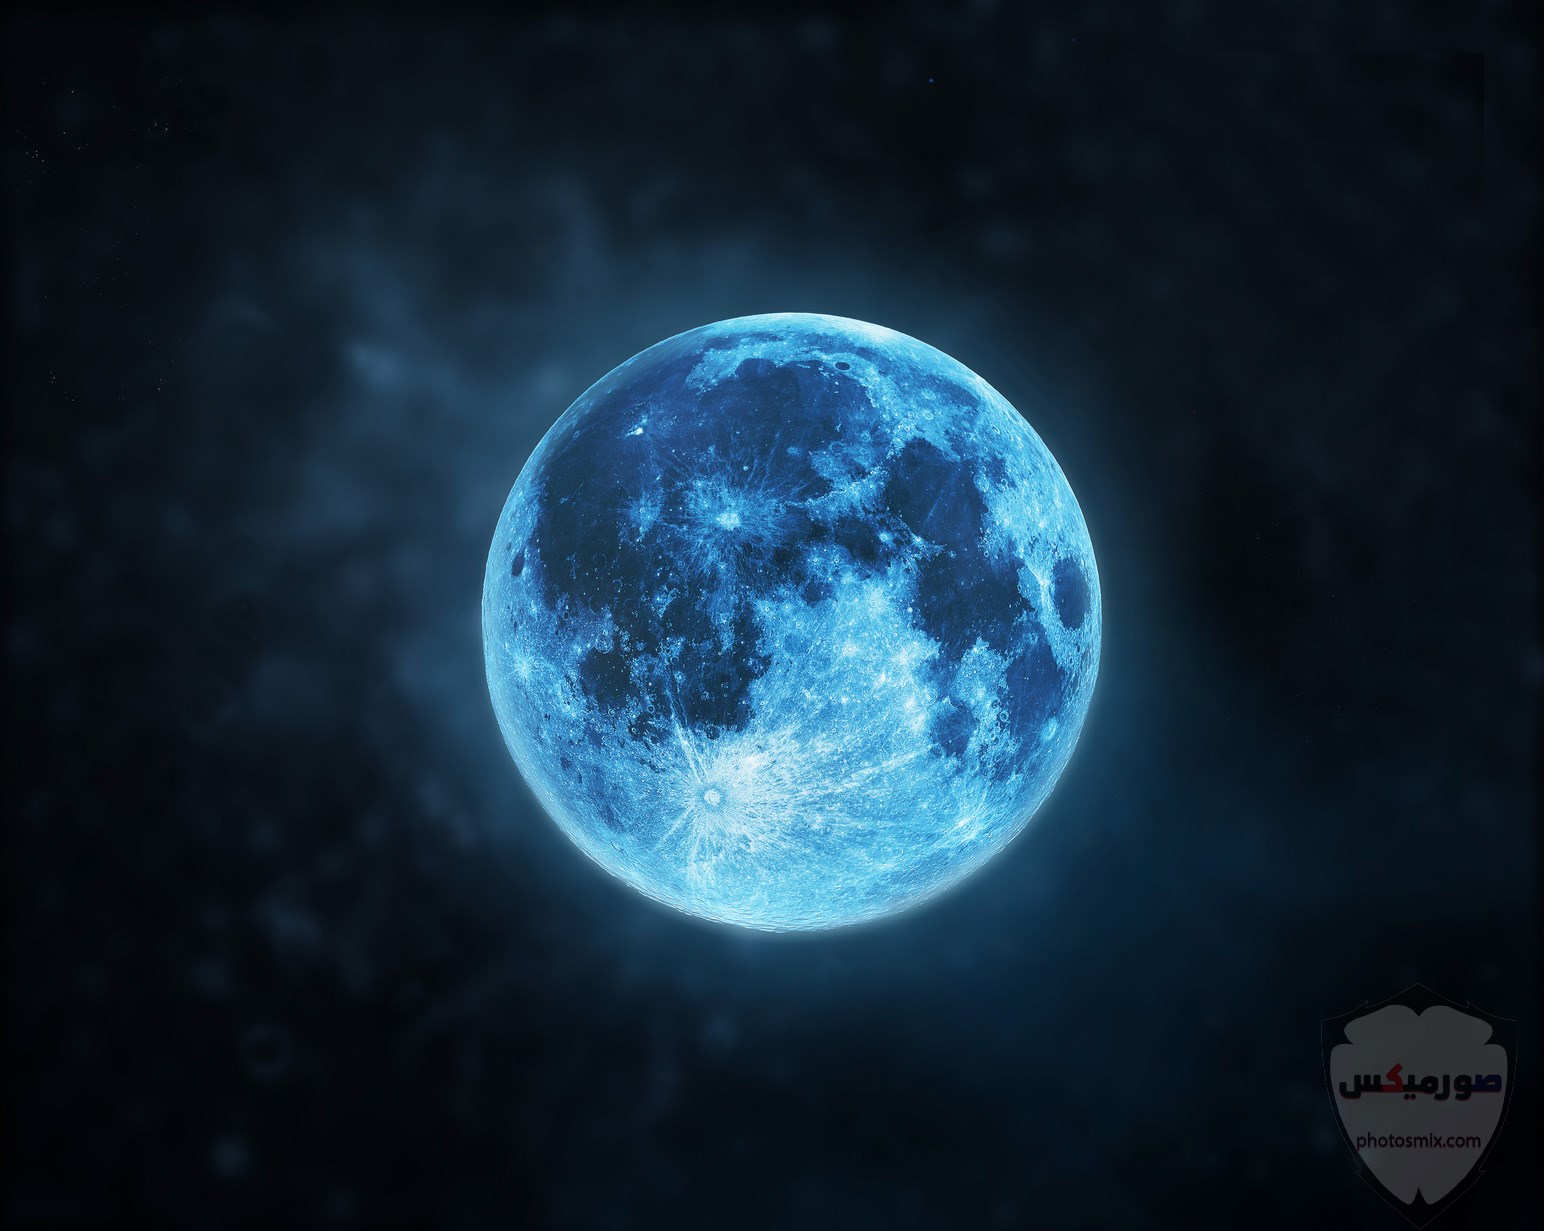 صور القمر والسماء والنجوم خلفيات للقمر والبدر والهلال عالية الجودة 4